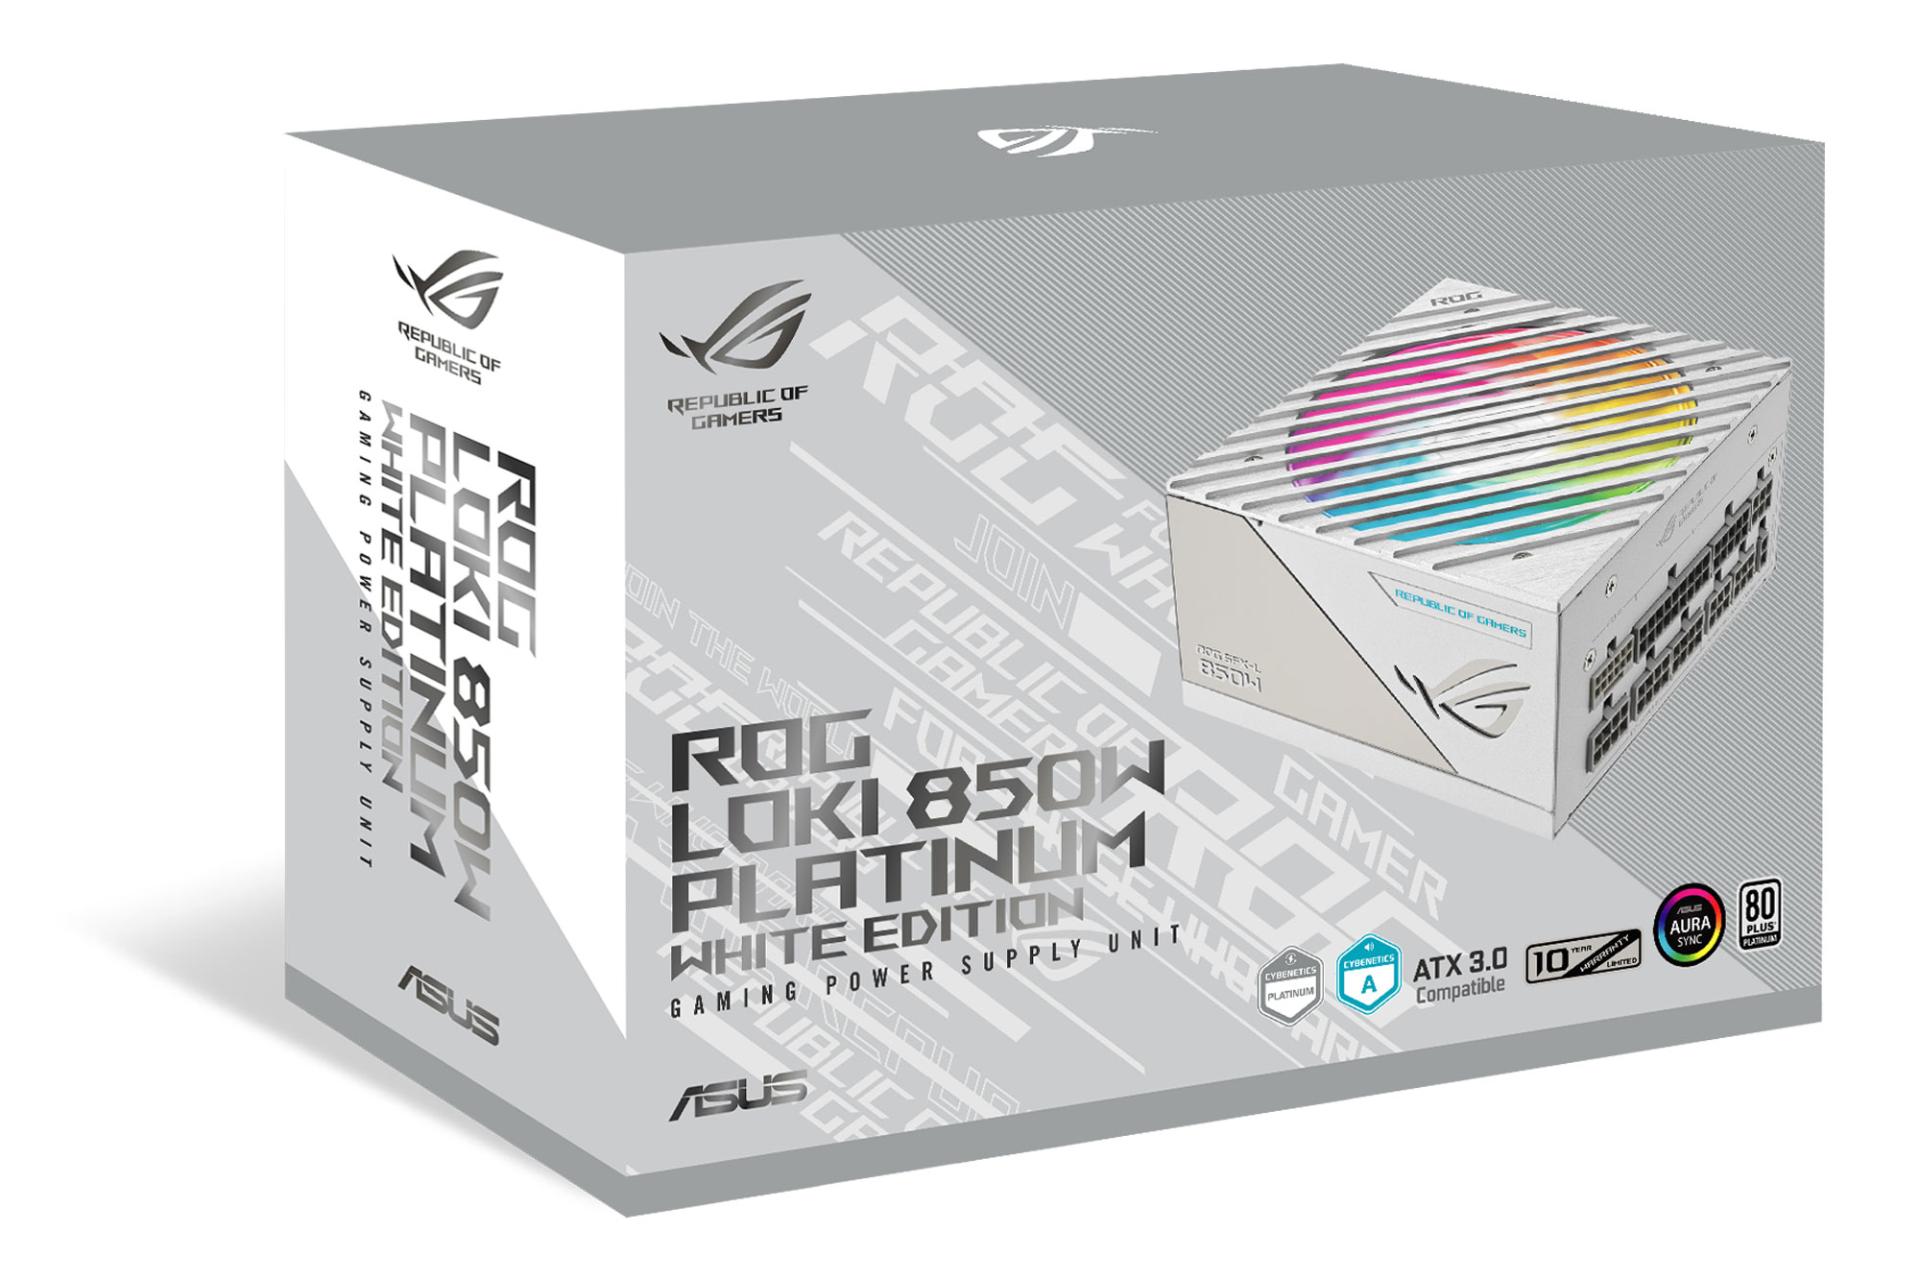 جعبه پاور کامپیوتر ایسوس ASUSROG LOKI SFX-L 850W Platinum White Edition با توان 850 وات